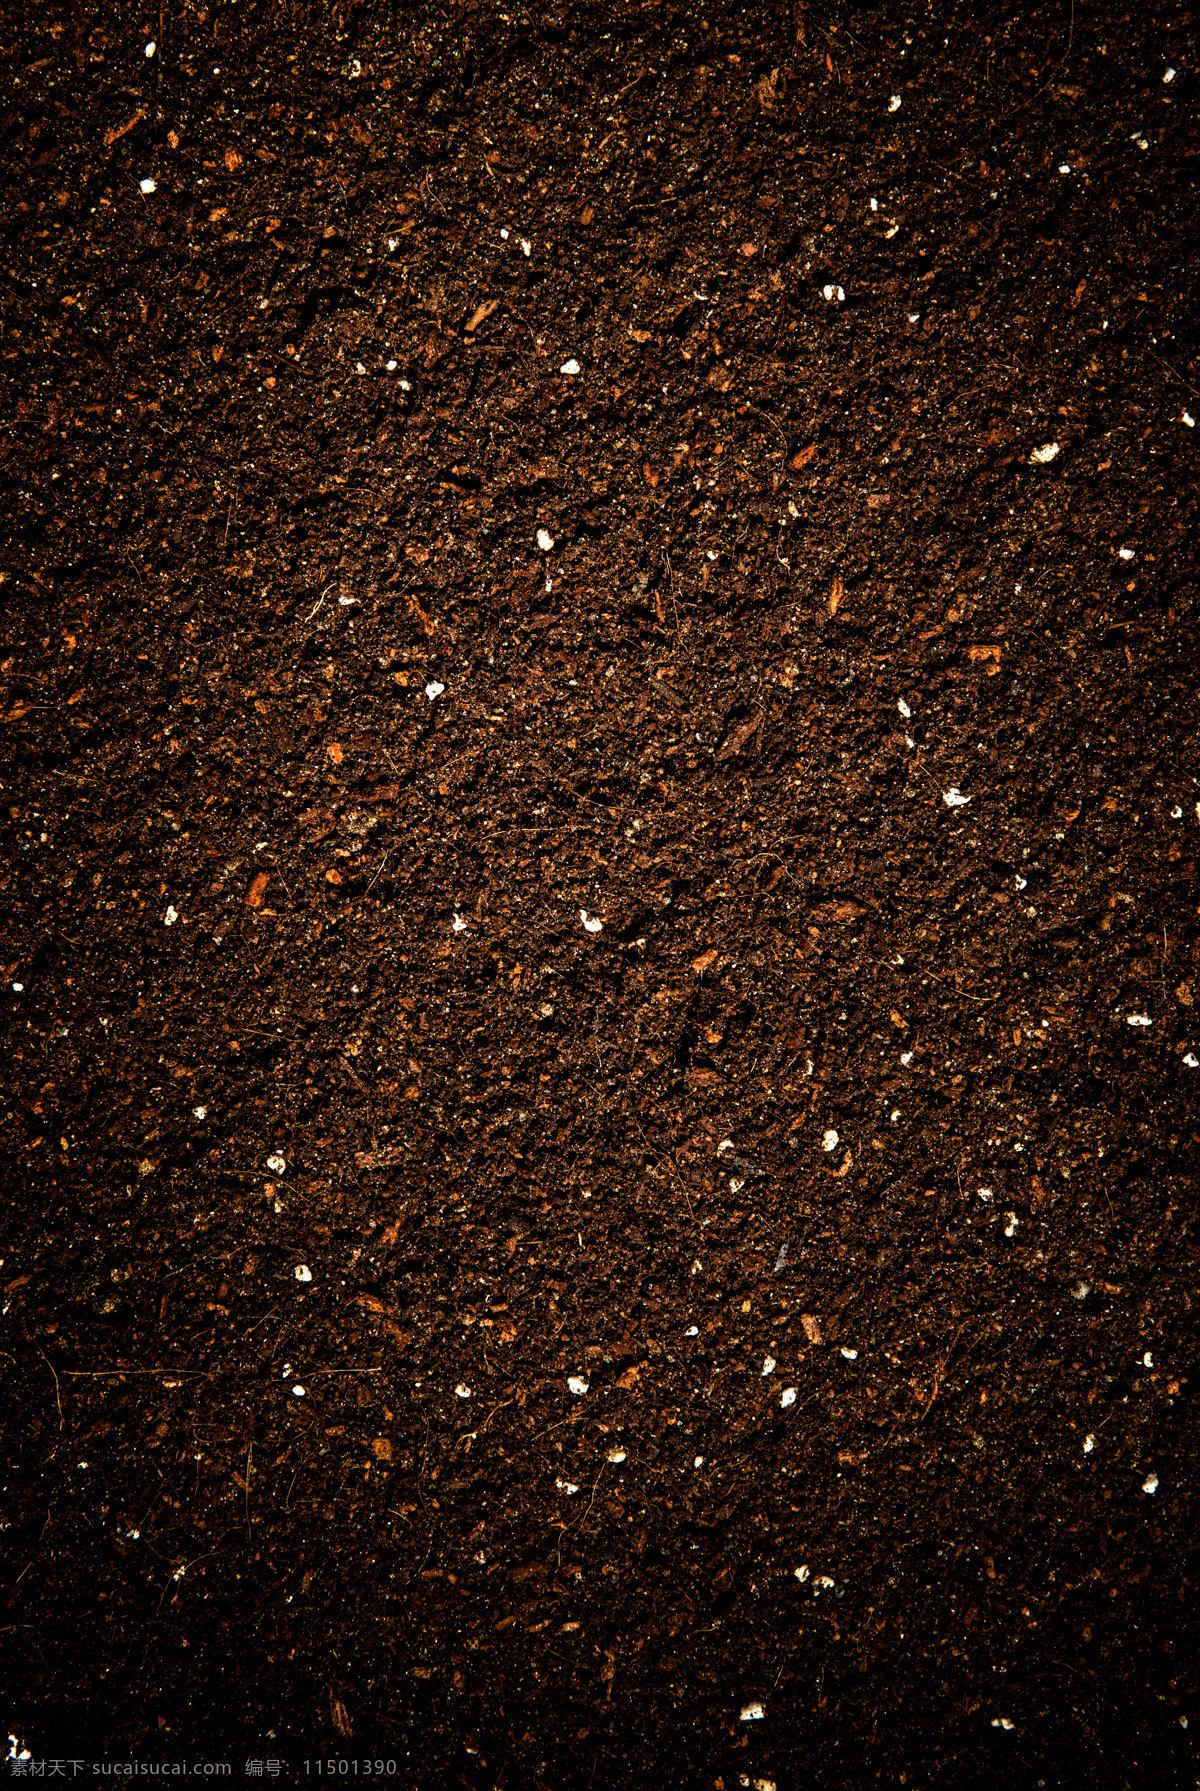 泥土 土地 褐色 背景 海报 素材图片